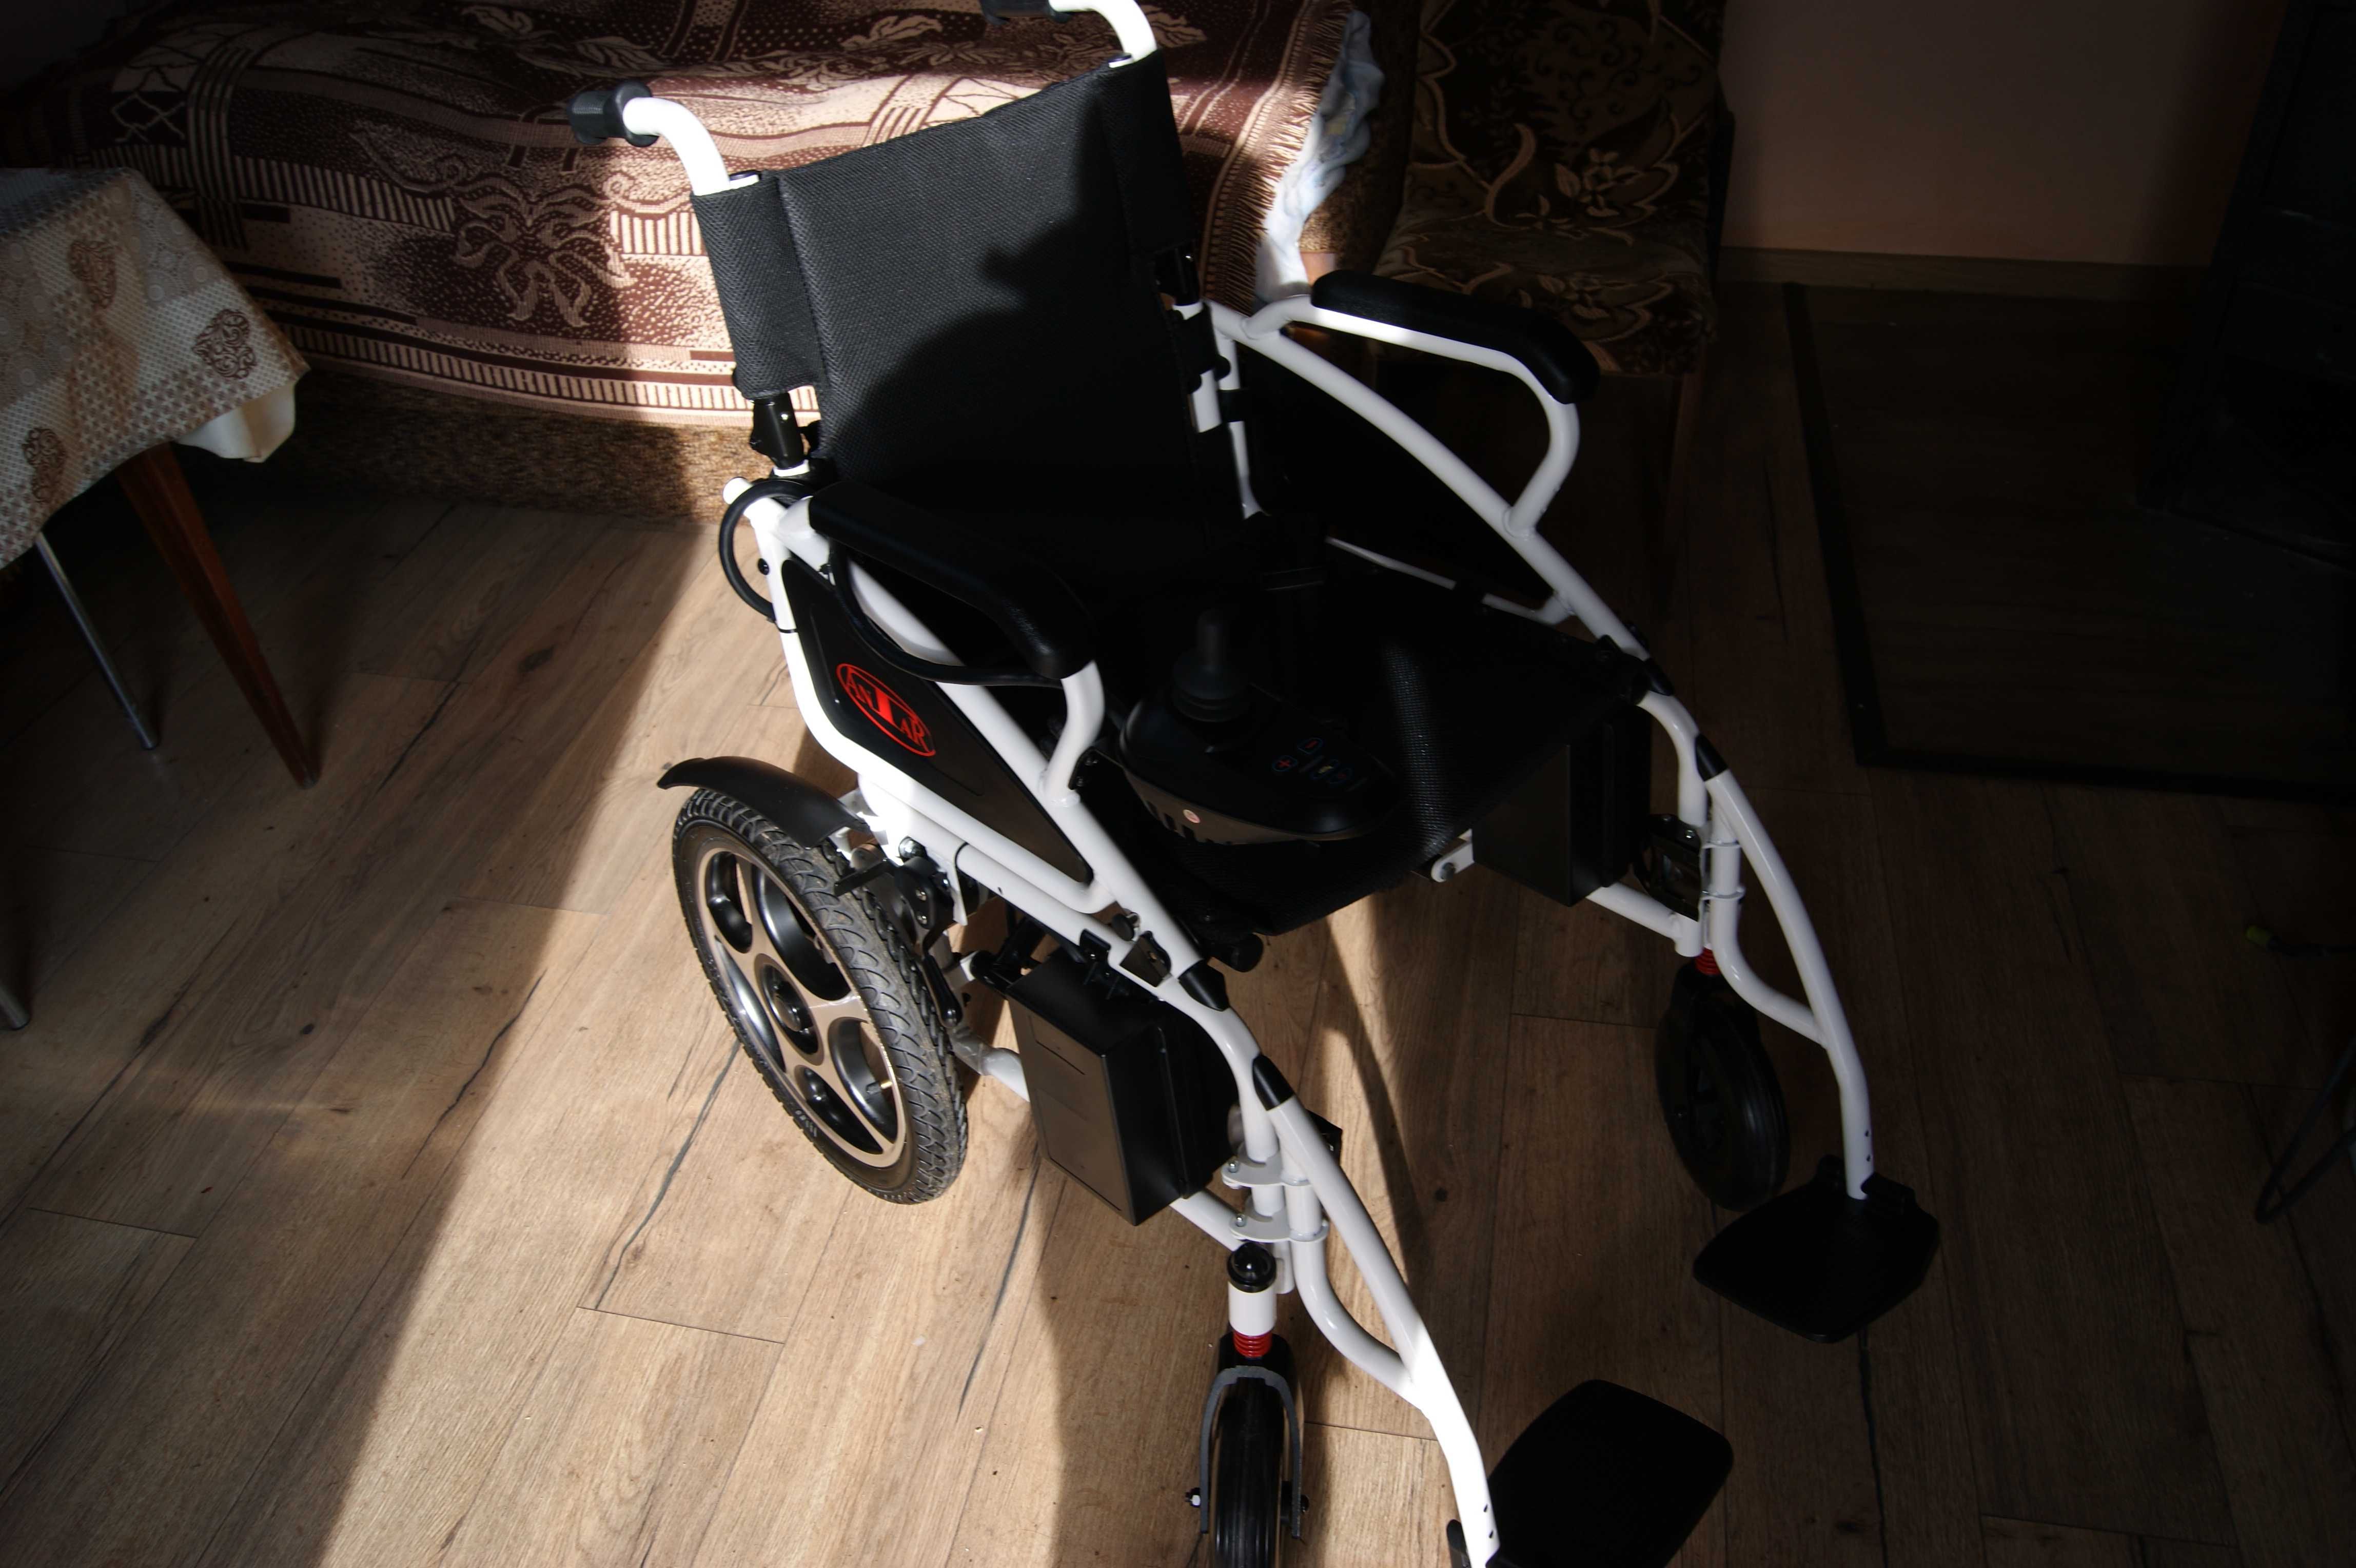 Wózek inwalidzki elektryczny ANTAR